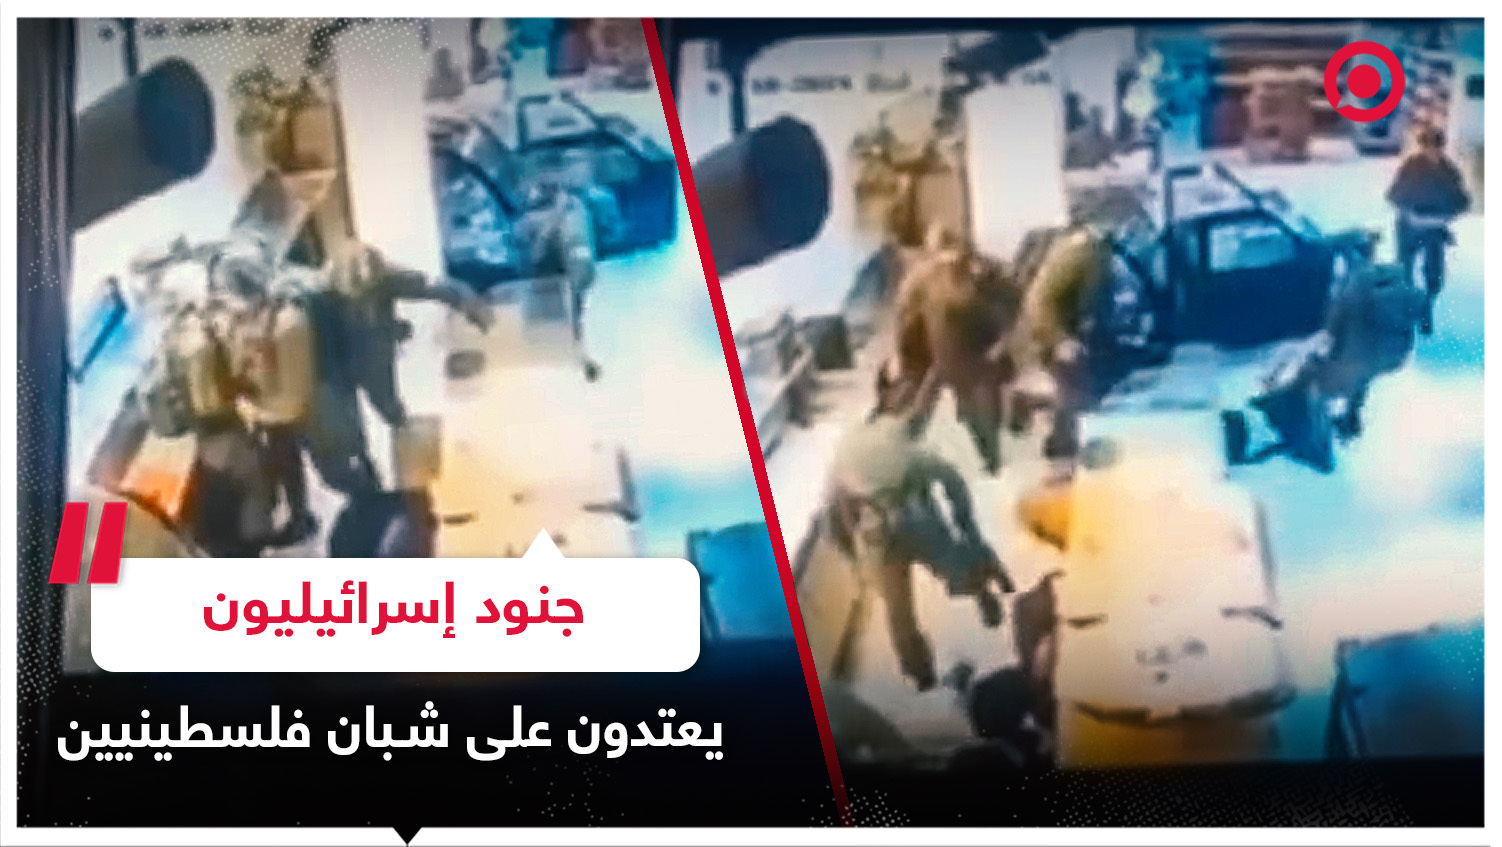 جنود إسرائيليون يعتدون بالضرب على شبان فلسطينيين بالضفة الغربية